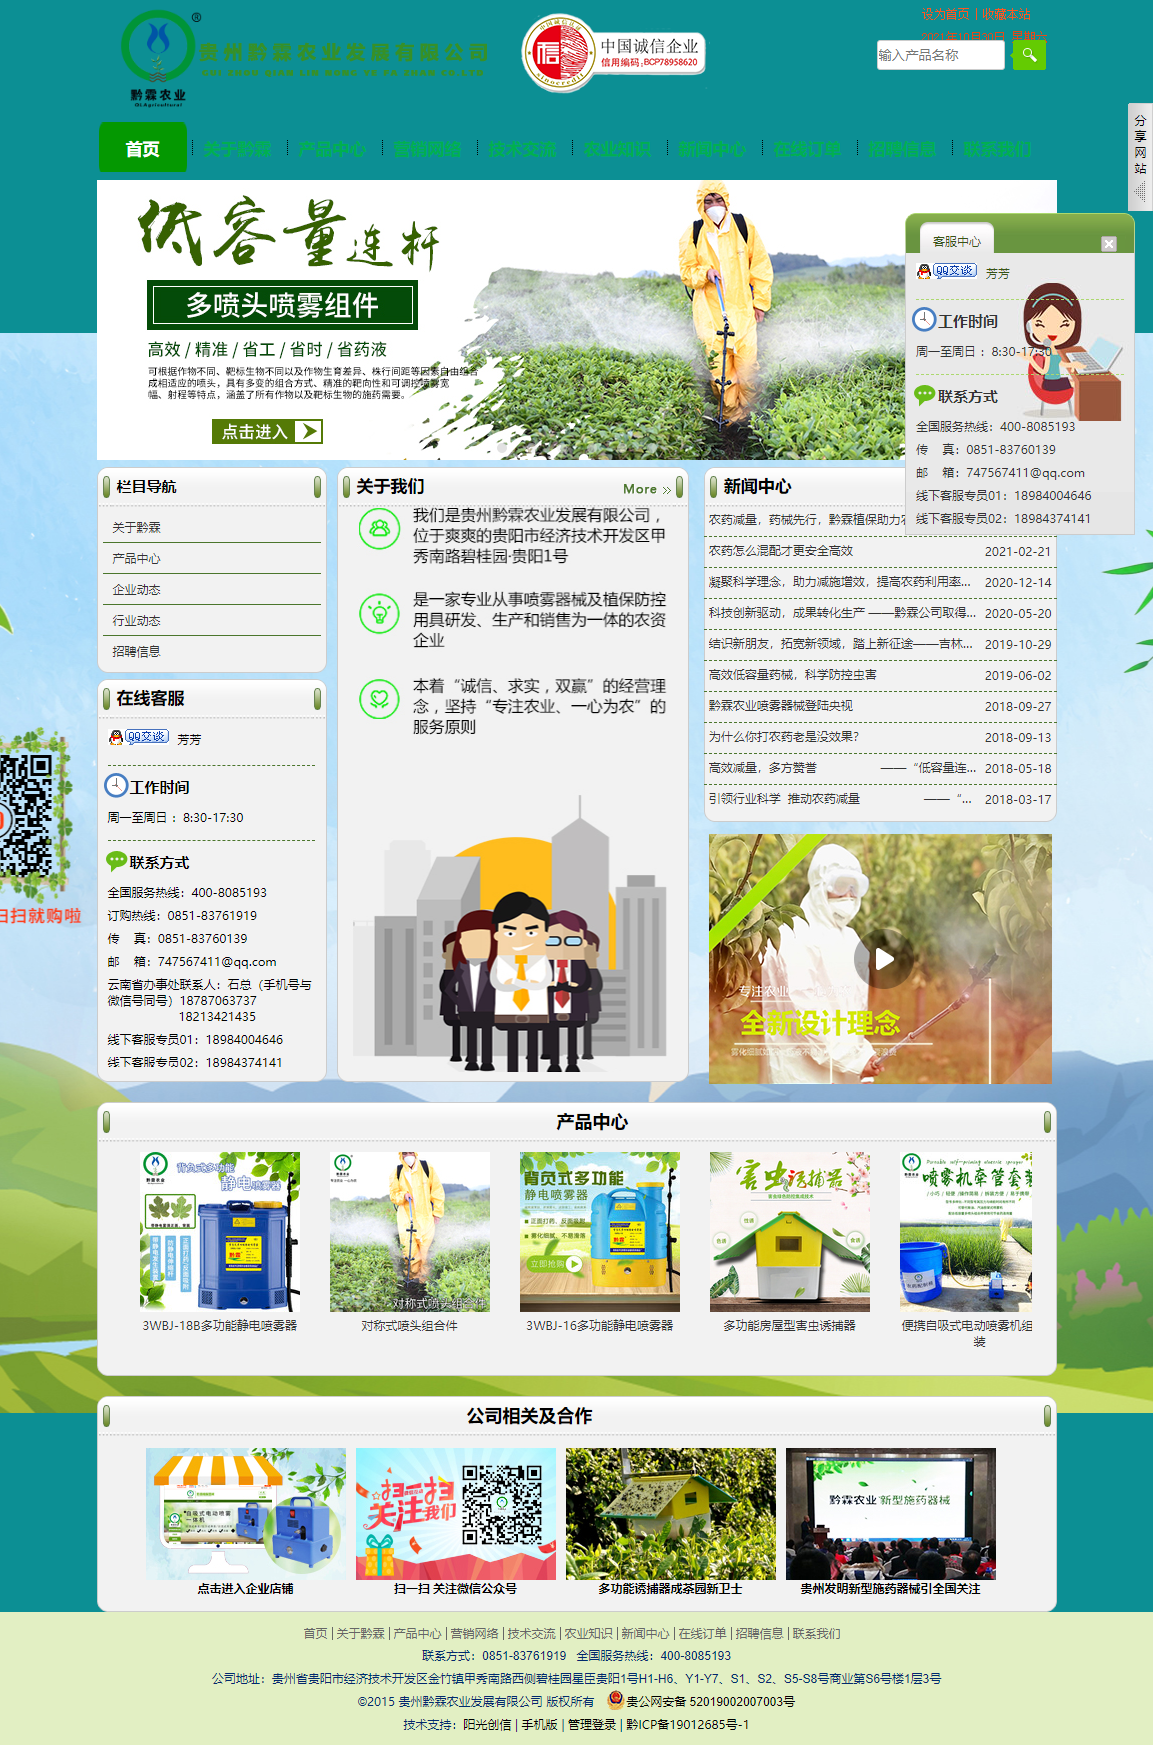 贵州黔霖农业发展有限公司网站案例